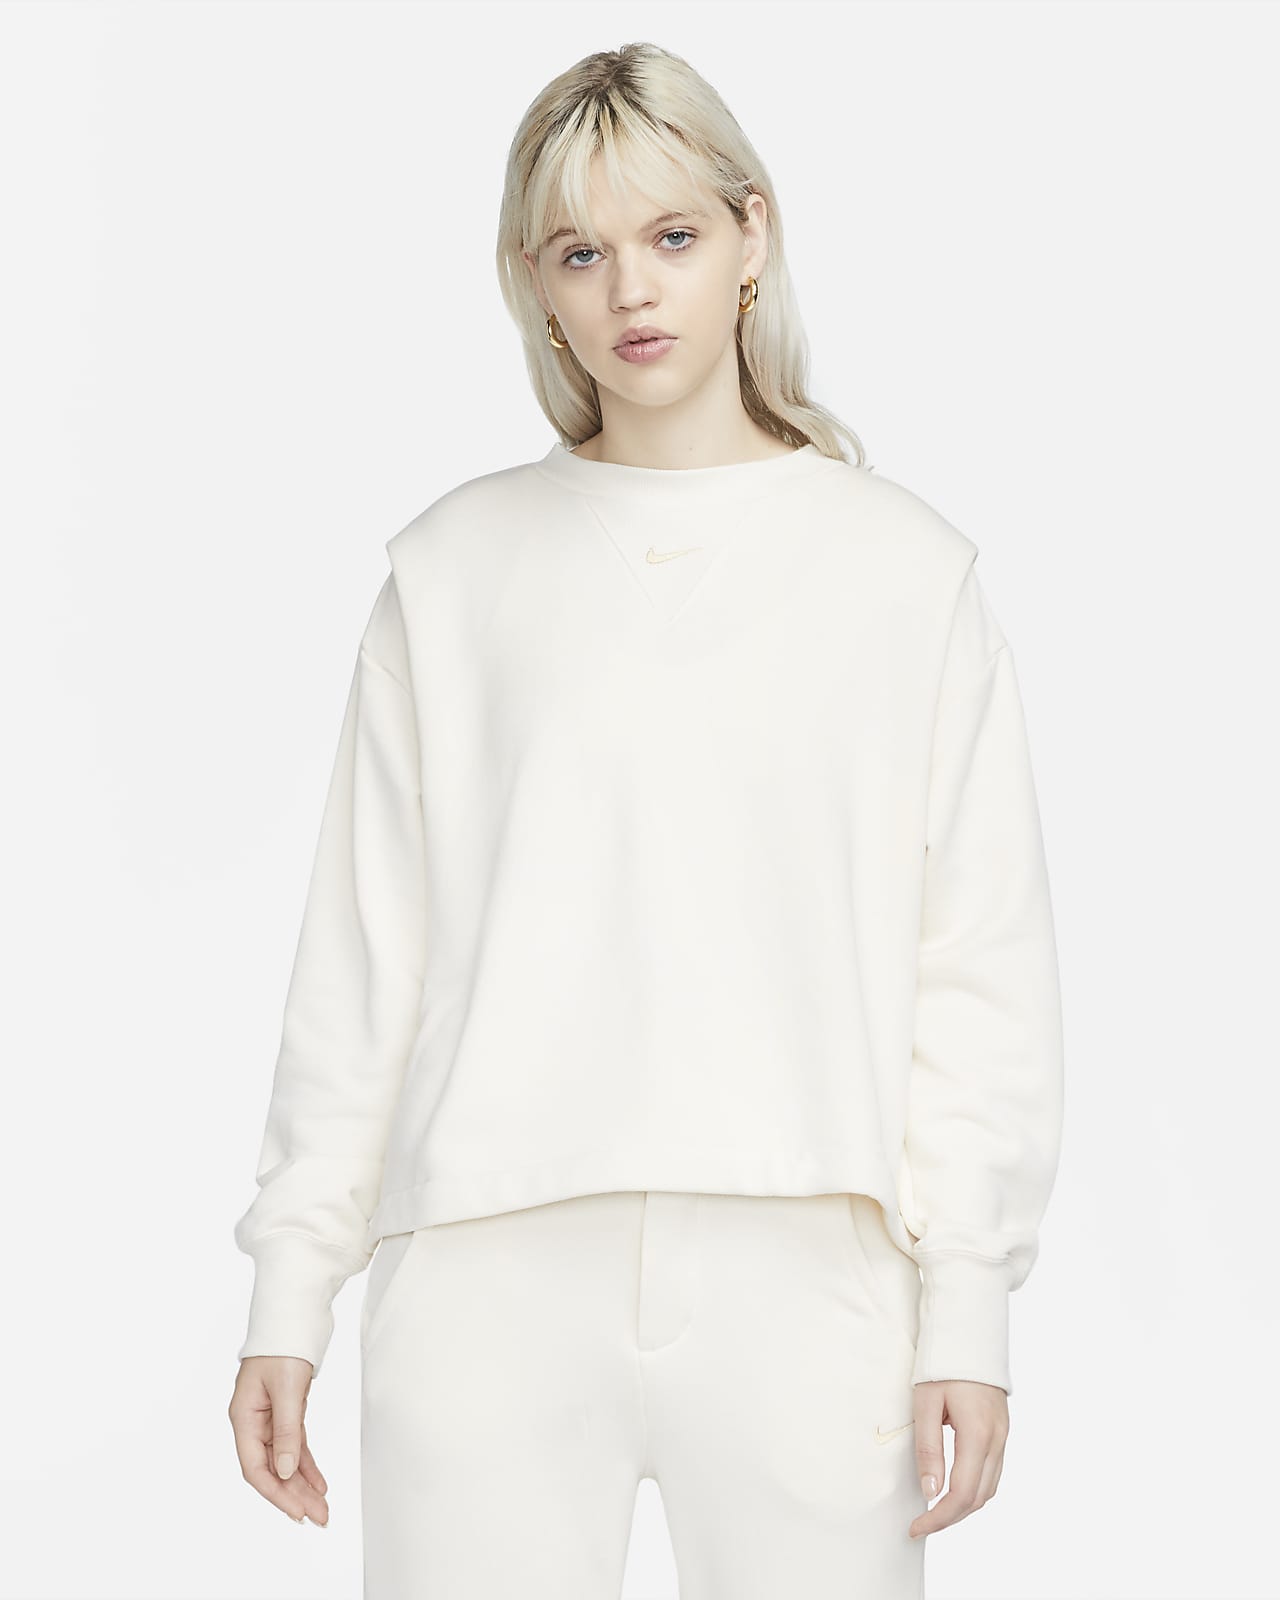 Sweatshirt de tecido moletão e gola redonda folgada Nike Sportswear Modern Fleece para mulher